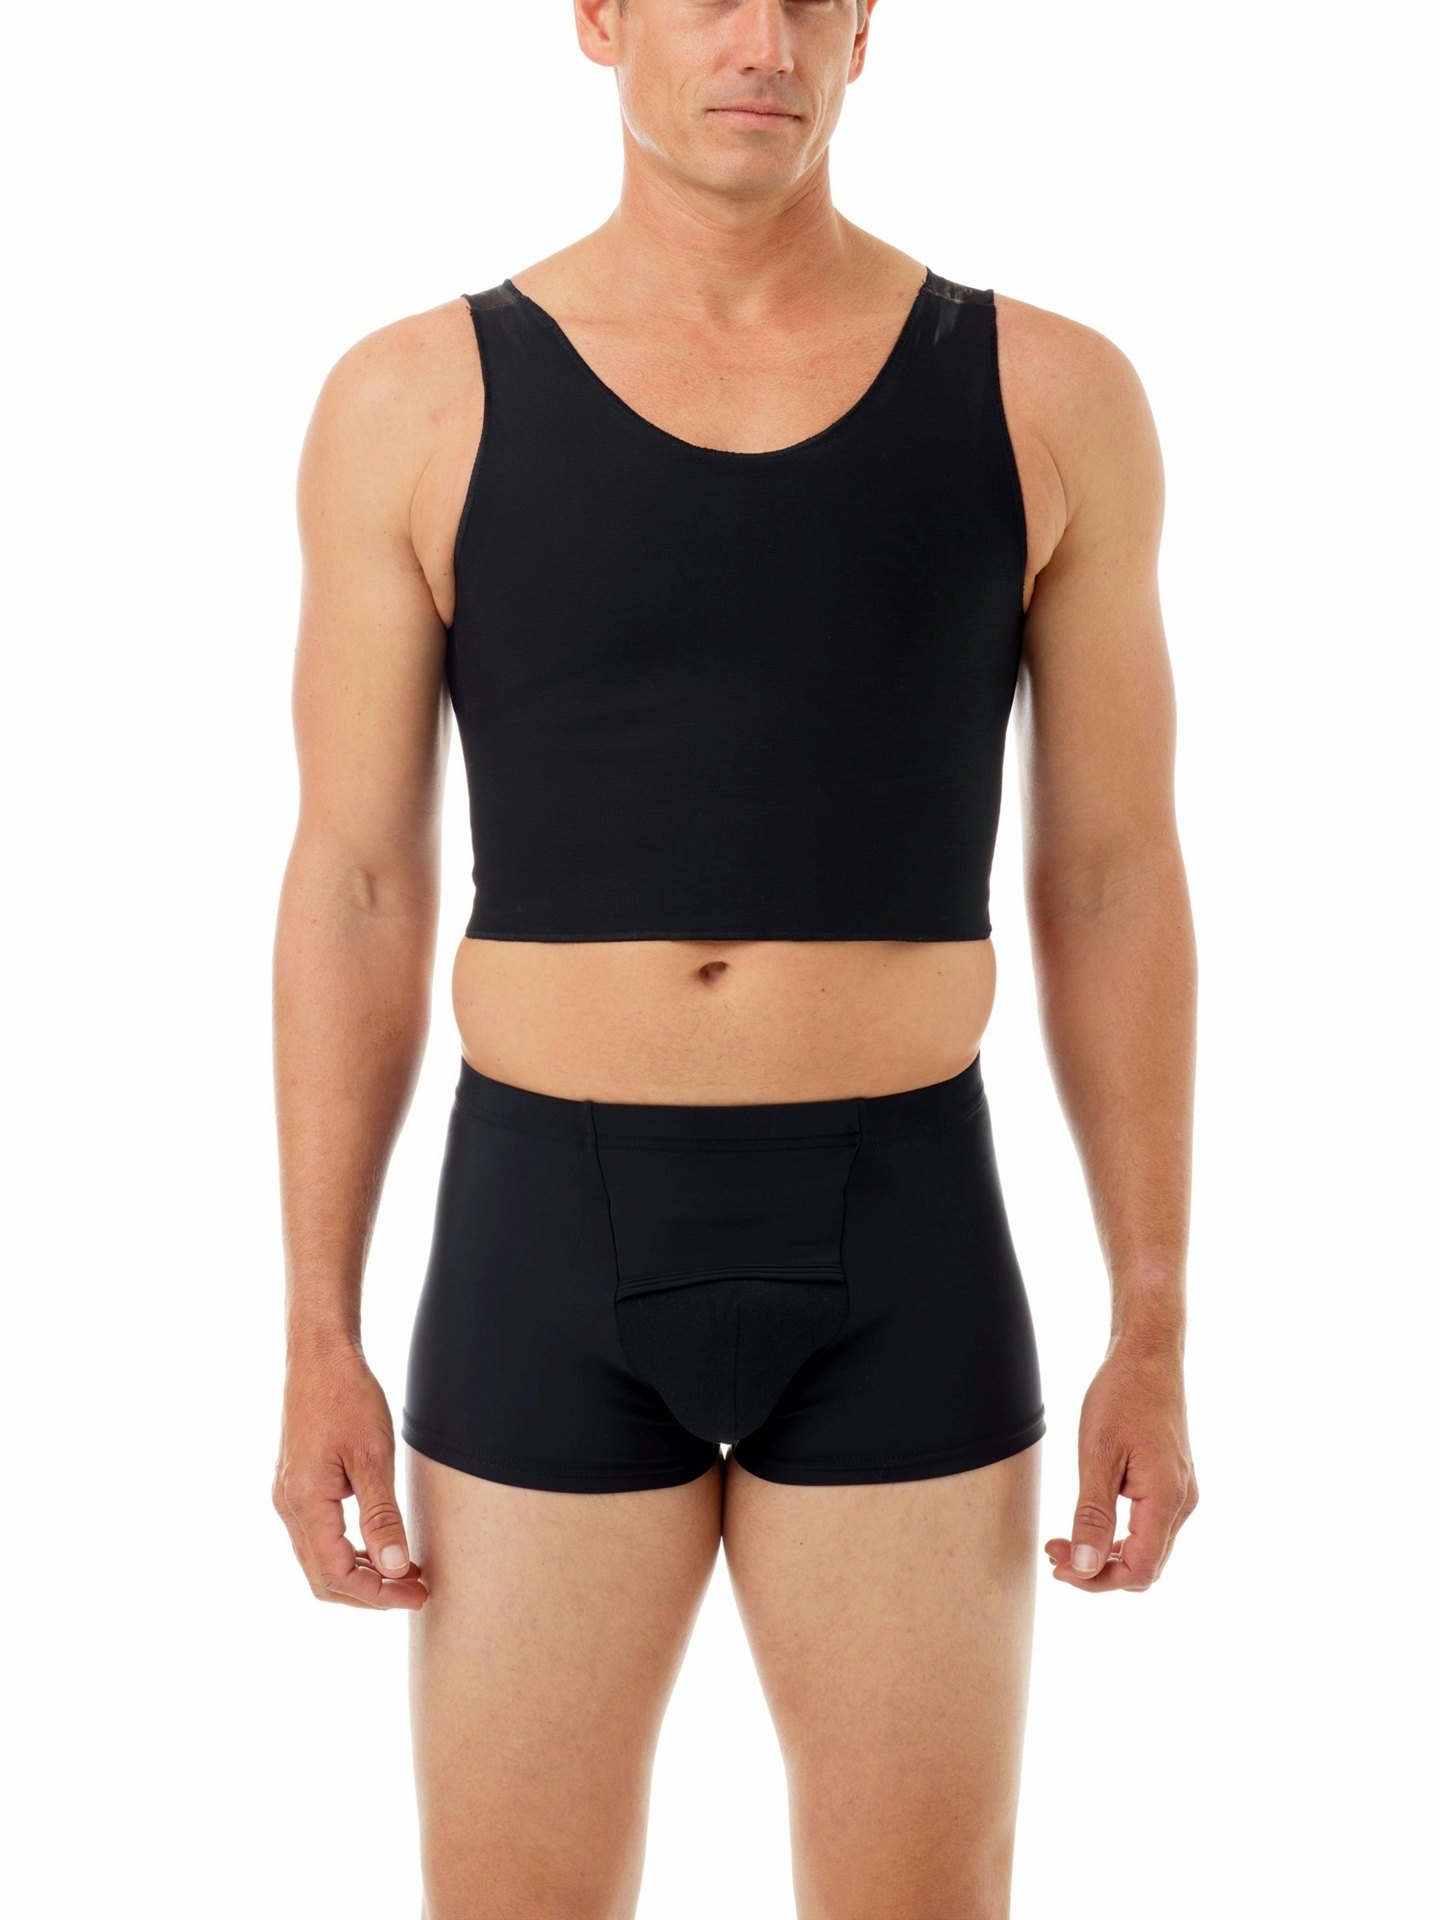 Chest Binder adjustable chest compression top for men